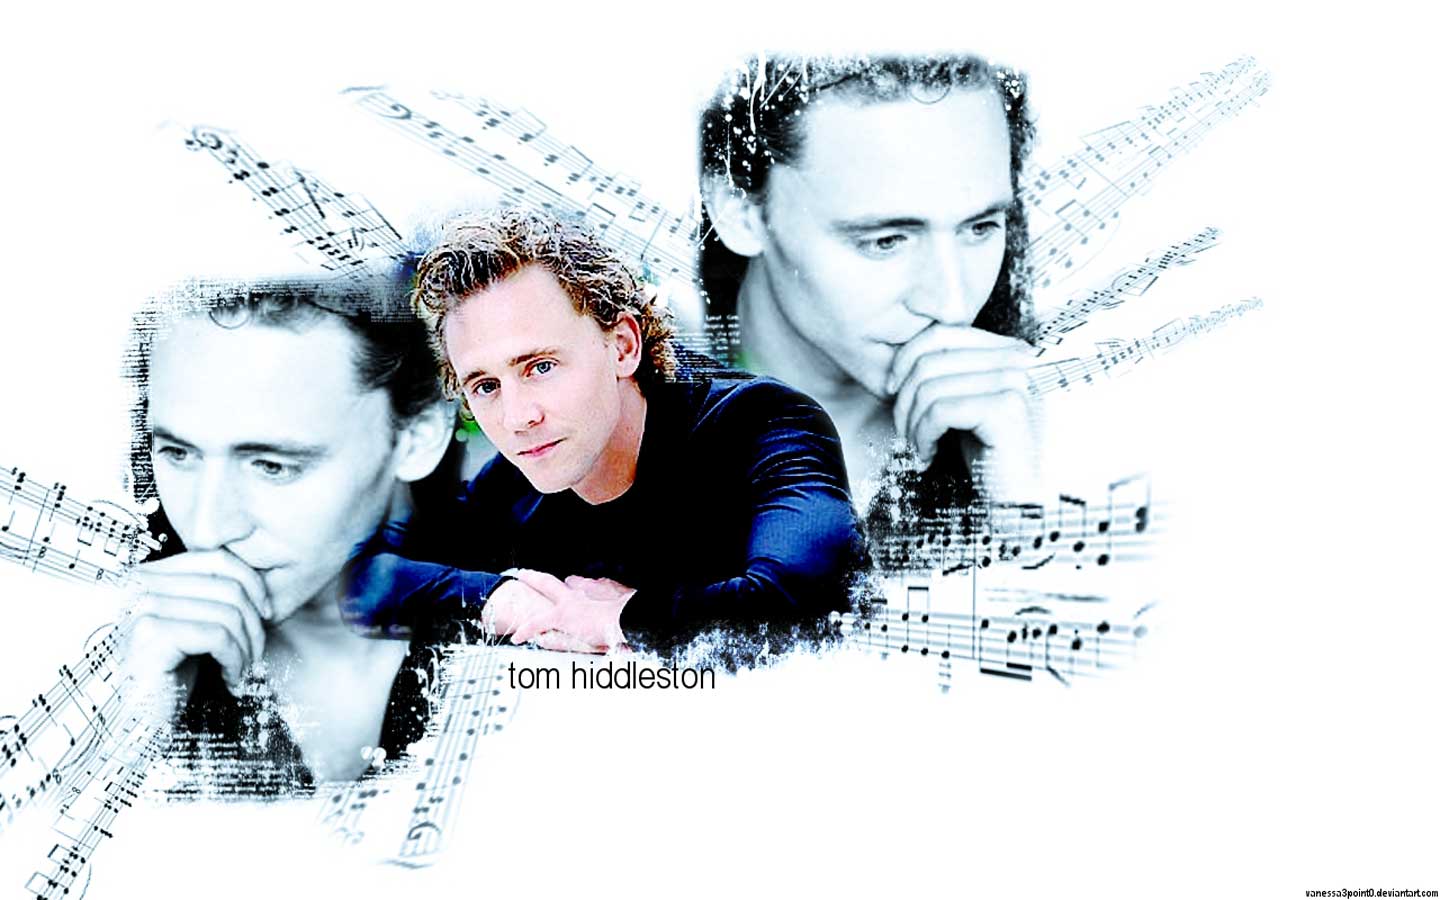 Tom Hiddleston Wallpaper - Tom Hiddleston Wallpaper (24707496 ...